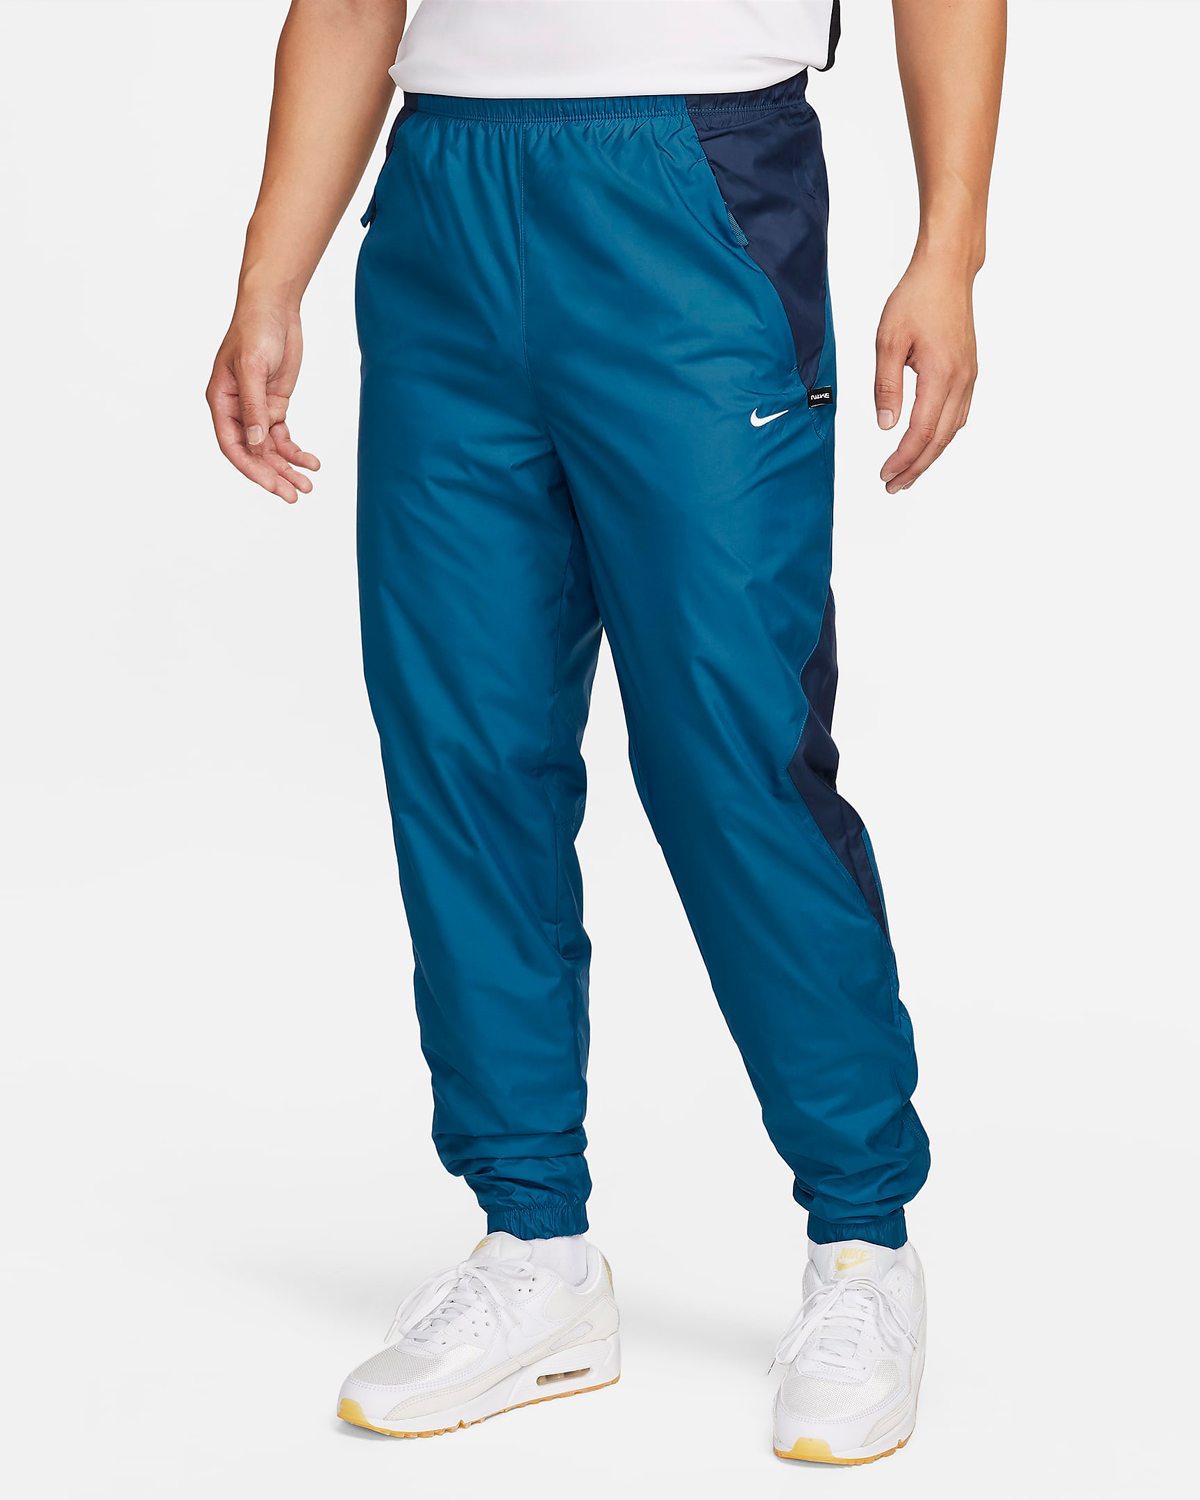 Nike-Repel-Pants-Industrial-Blue